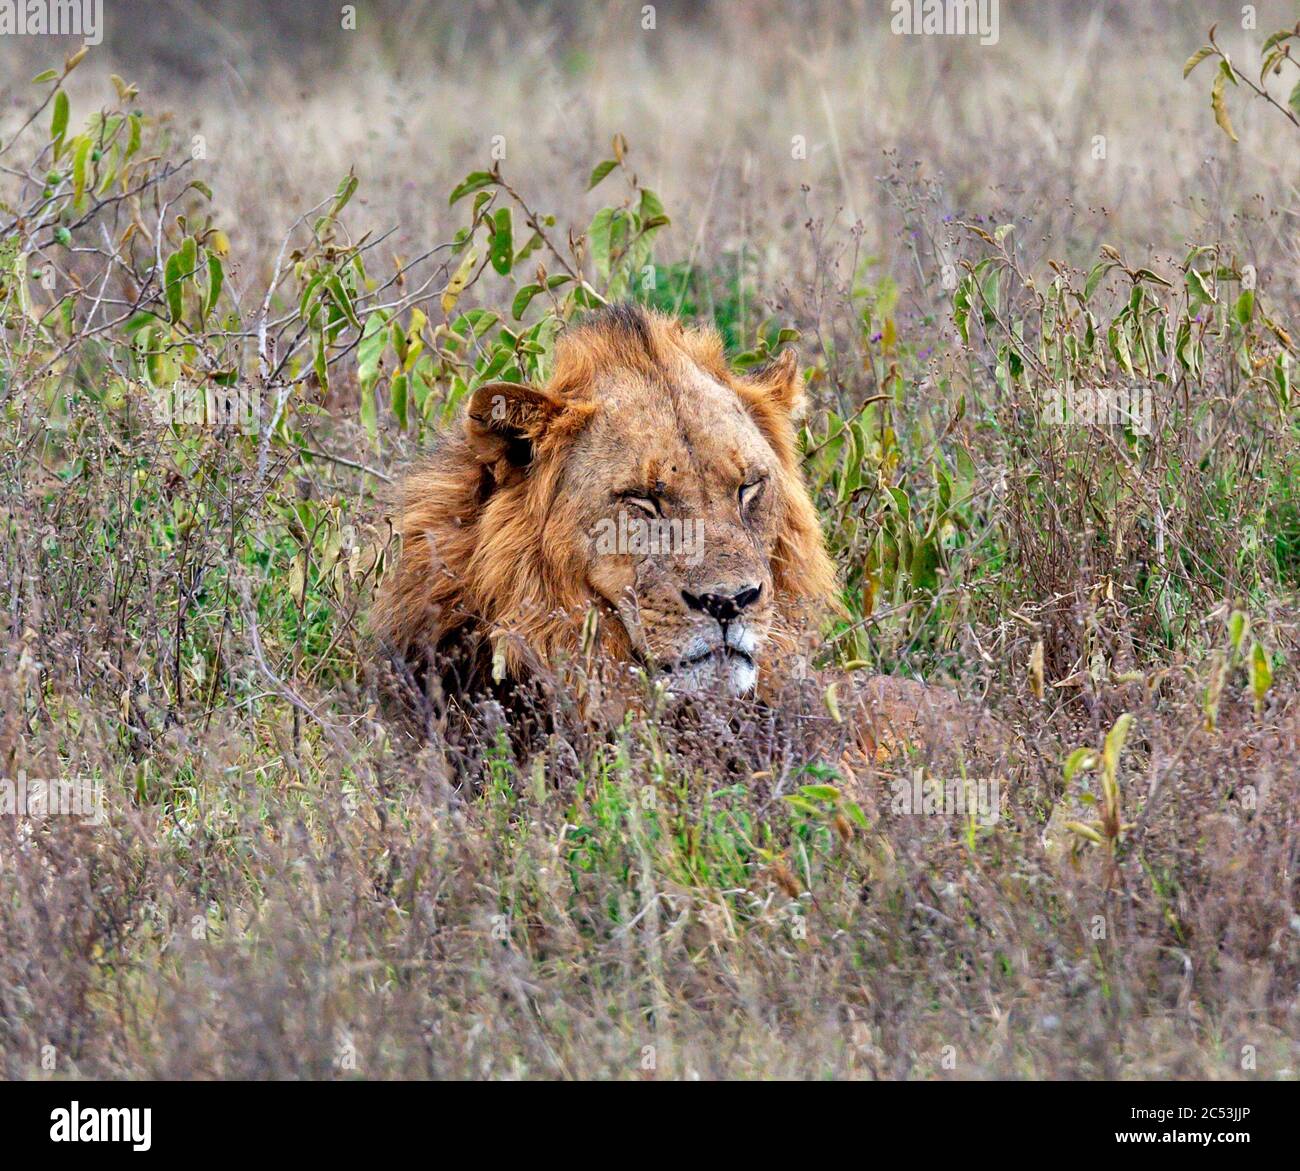 Lion (Panthera leo). Male lion lying in the long grass, Lake Nakuru National Park, Kenya, Africa Stock Photo